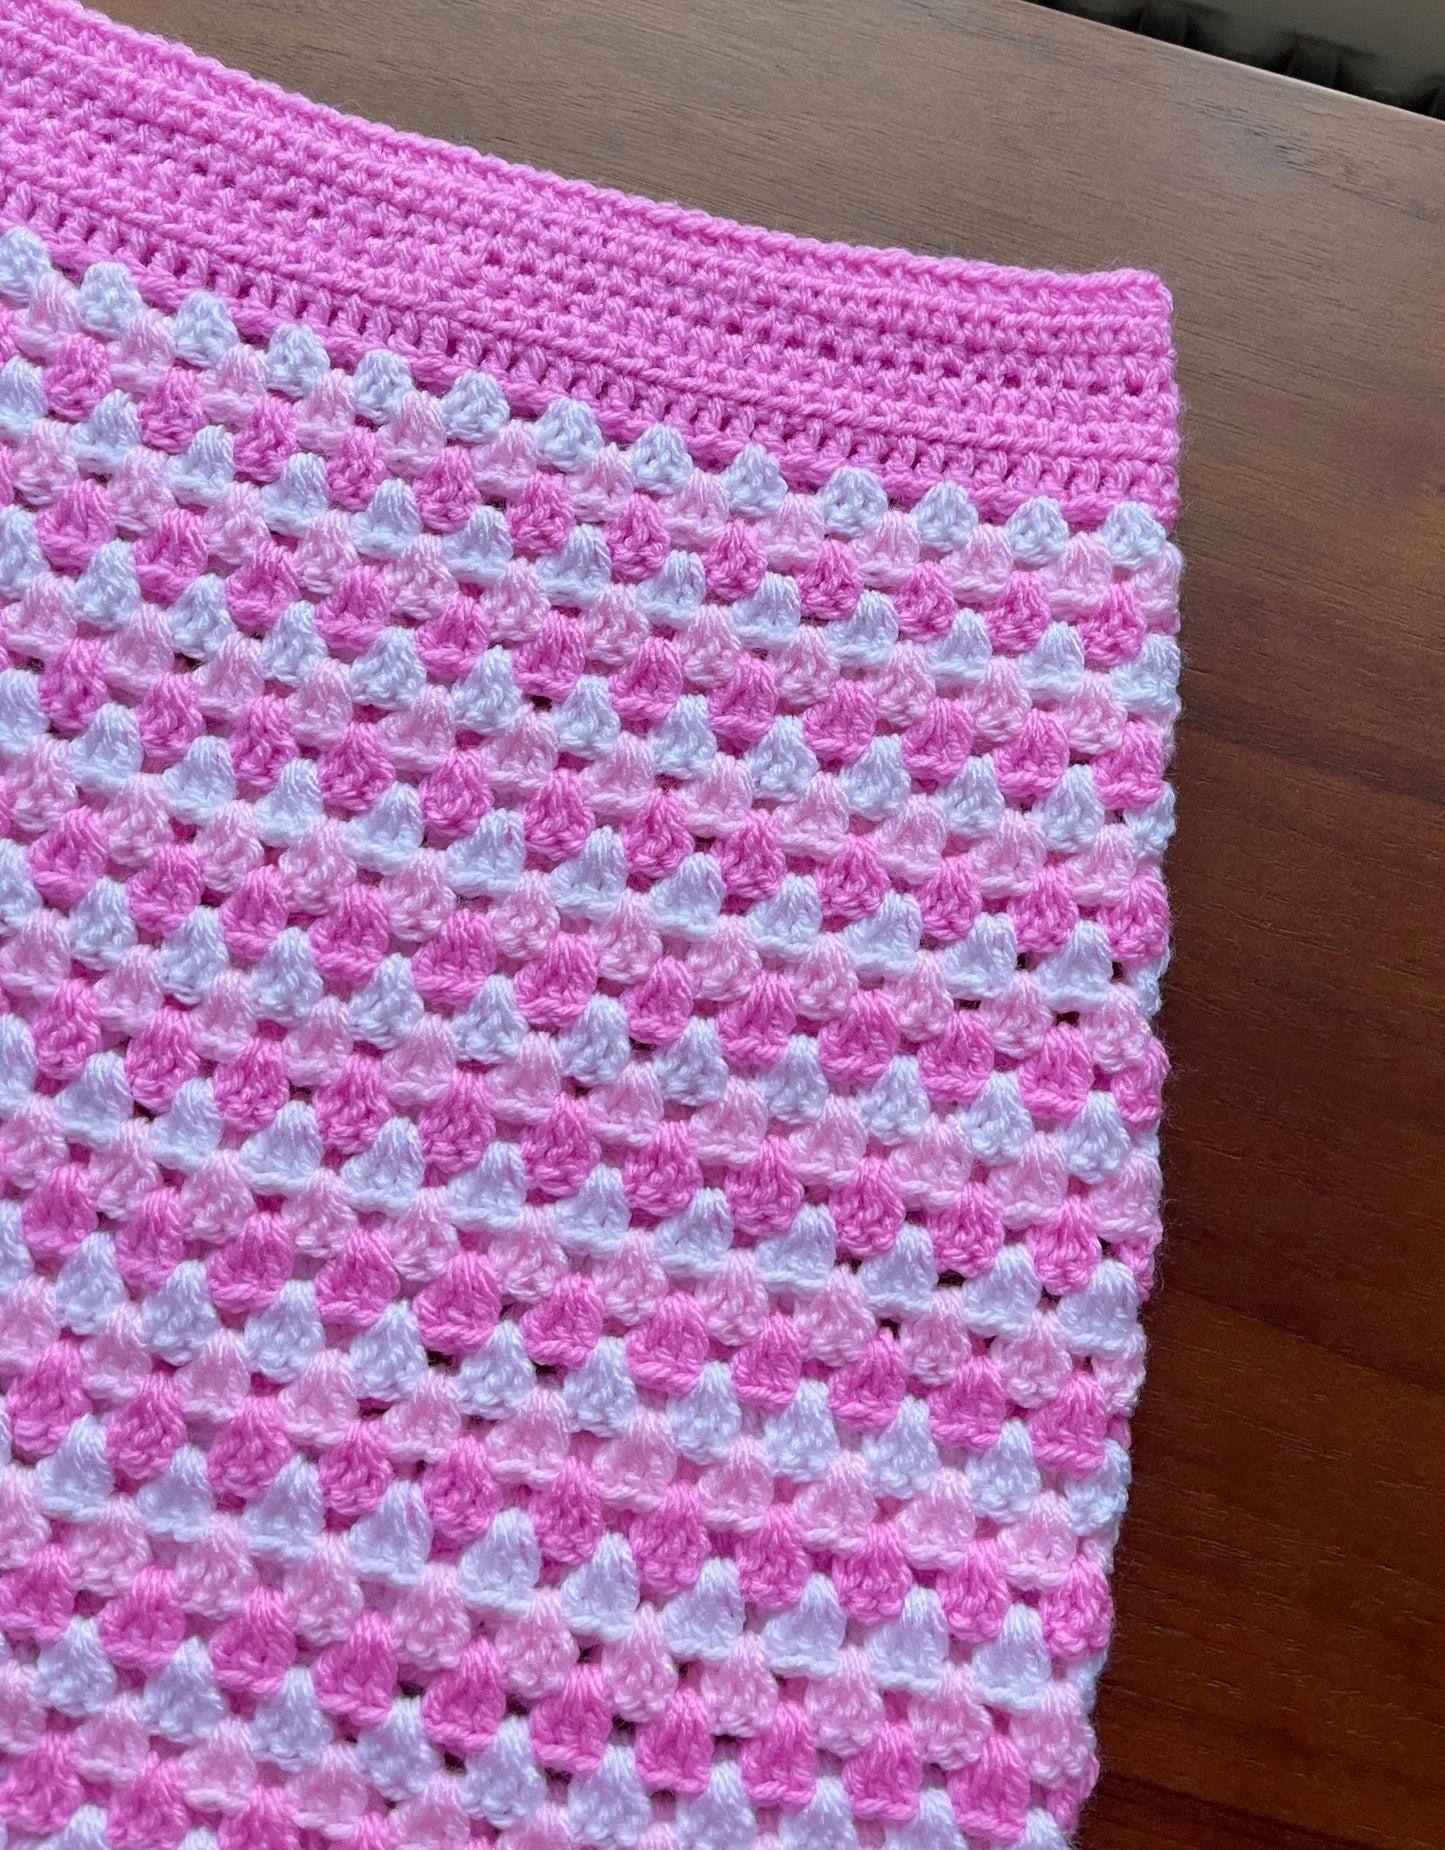 Handmade retro crochet mini skirt in pink and white